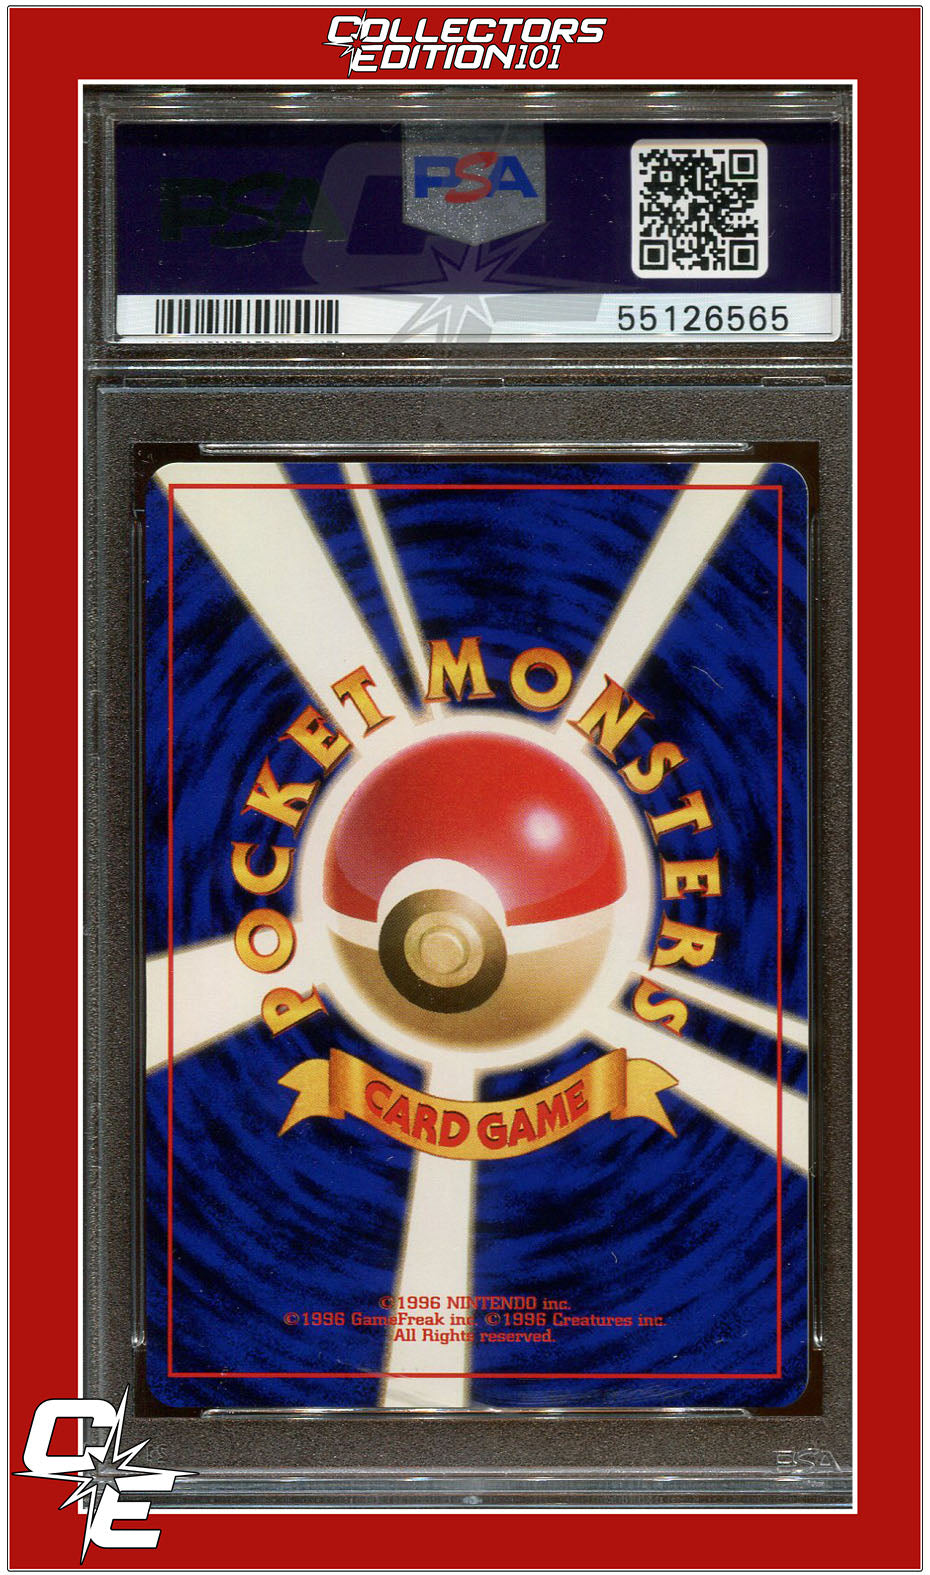 Dark Machamp - PSA Graded Pokemon Cards - Pokemon